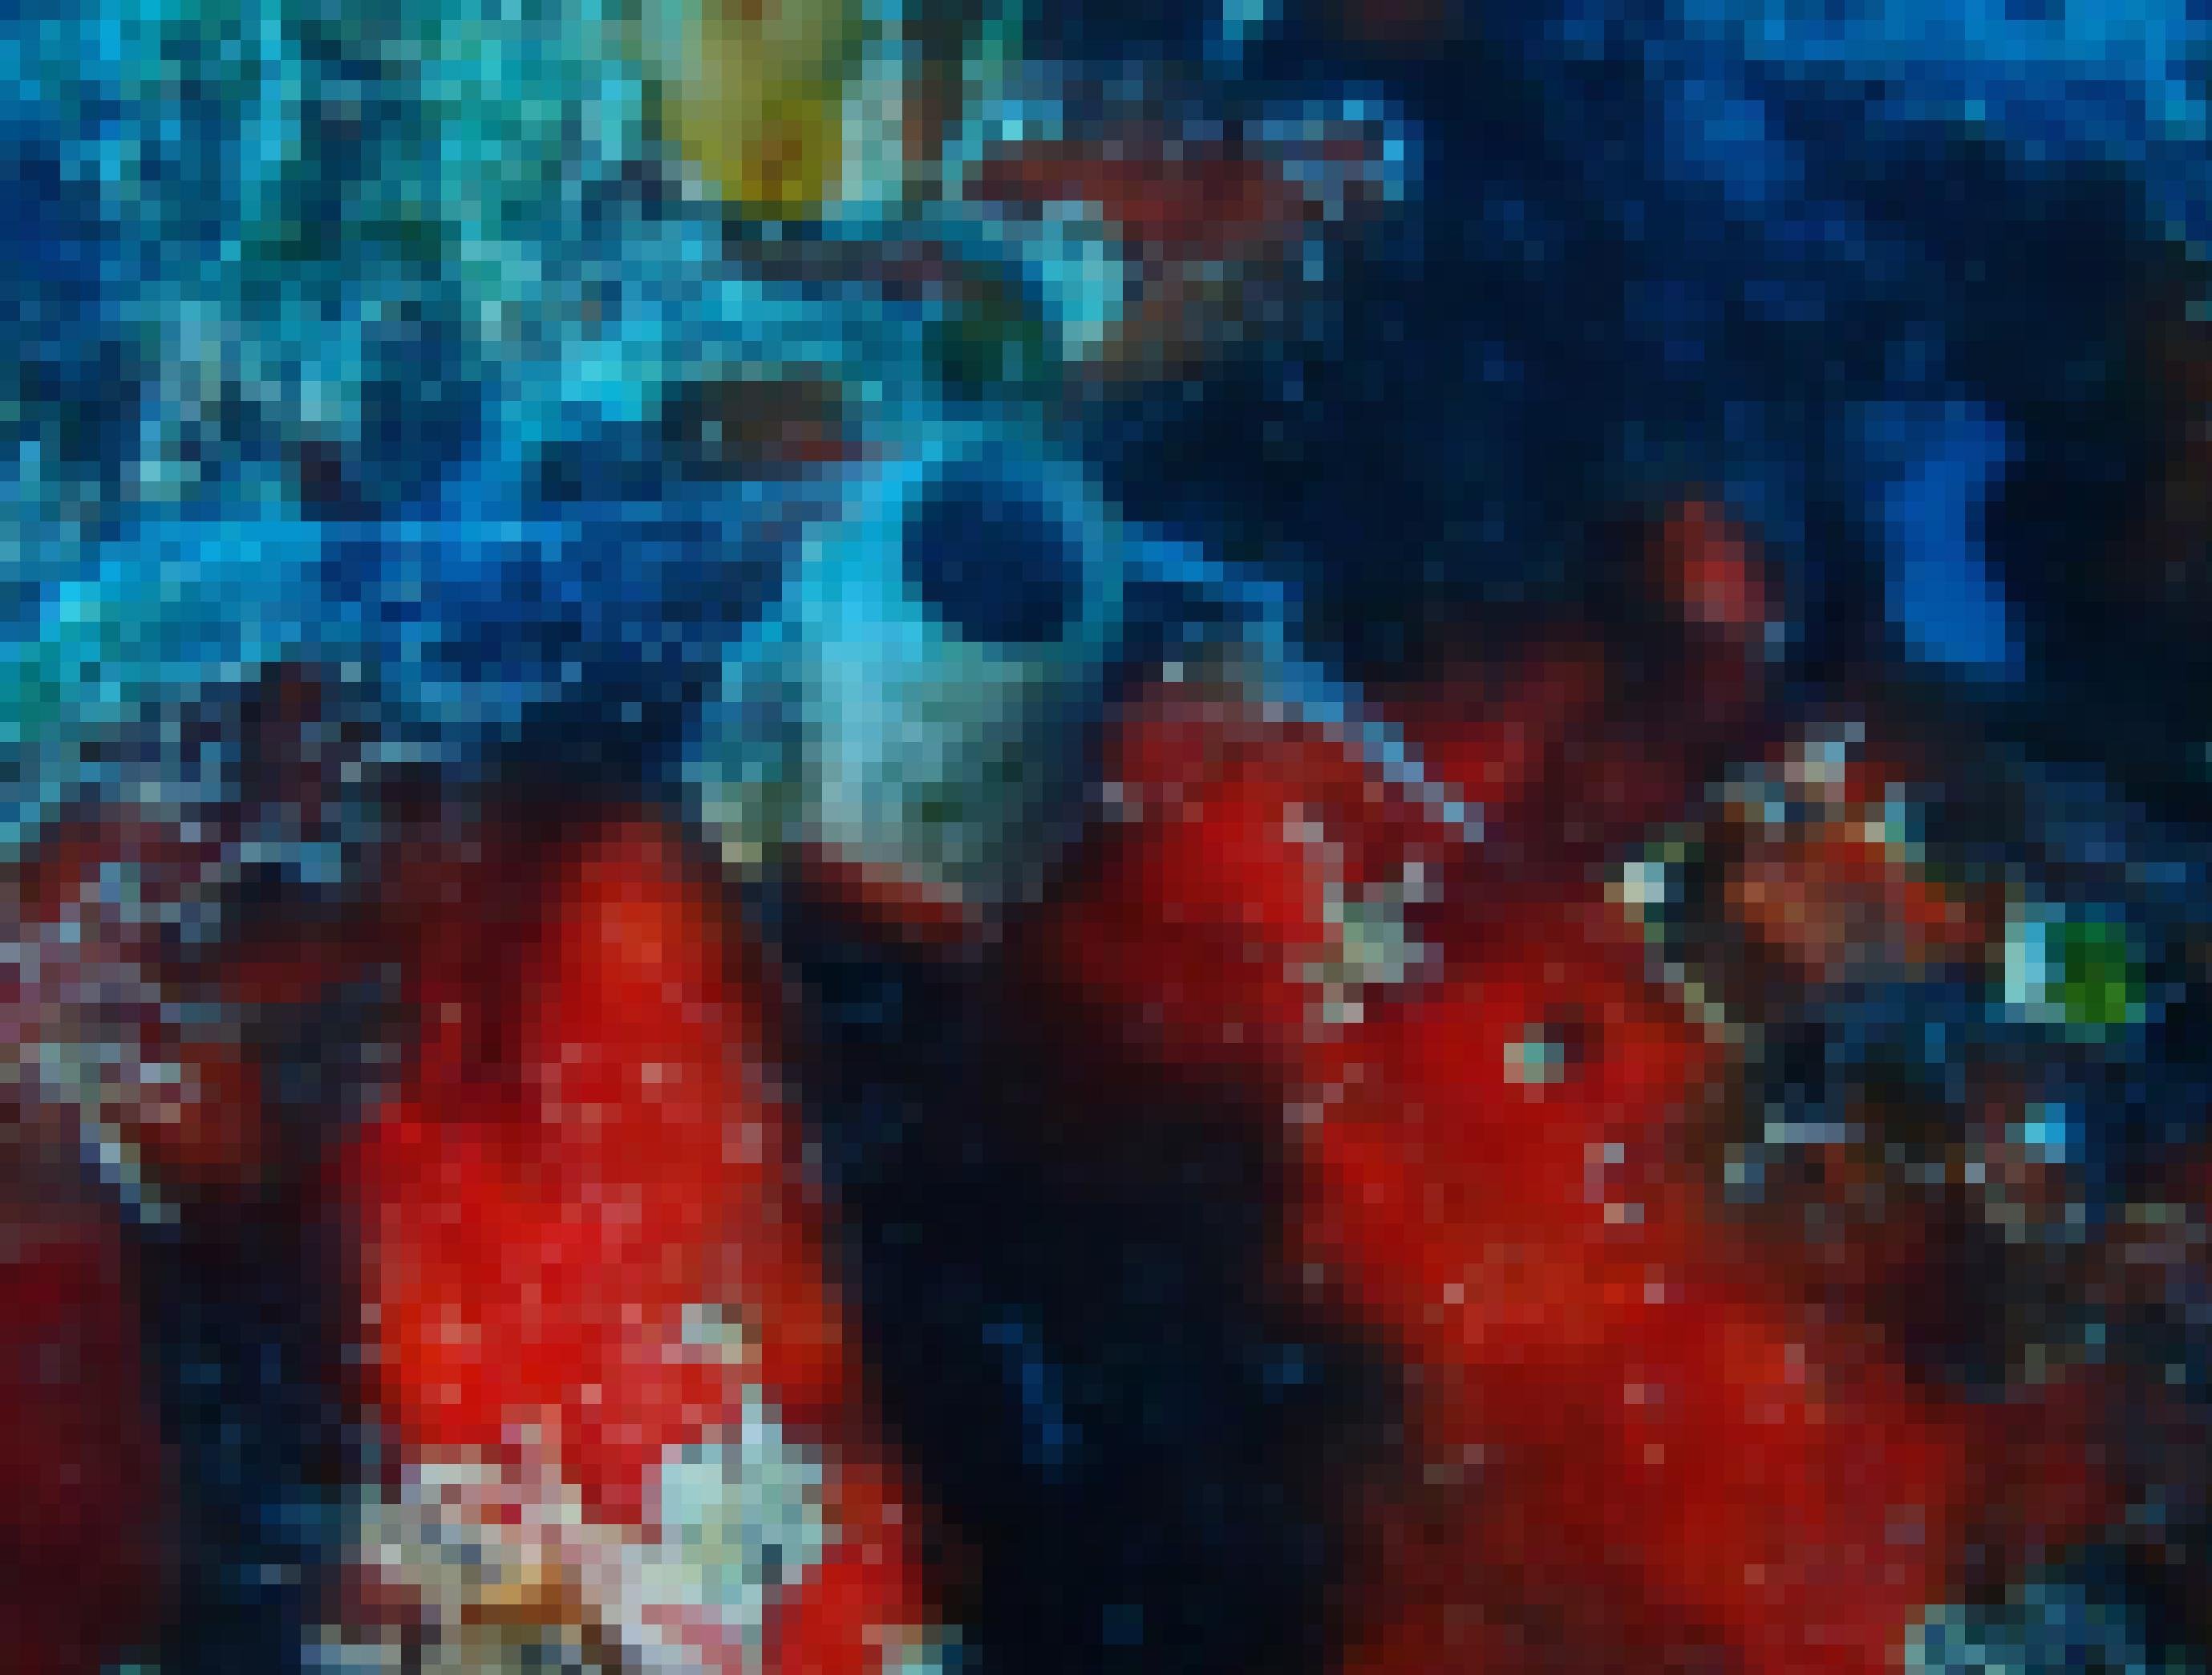 Unterwasserfoto mit verschiedenen Meereslebewesen. In der Mitte die bläuliche Röhre einer Wurmschnecke, um die ein Schleimnetz aufgespannt ist.